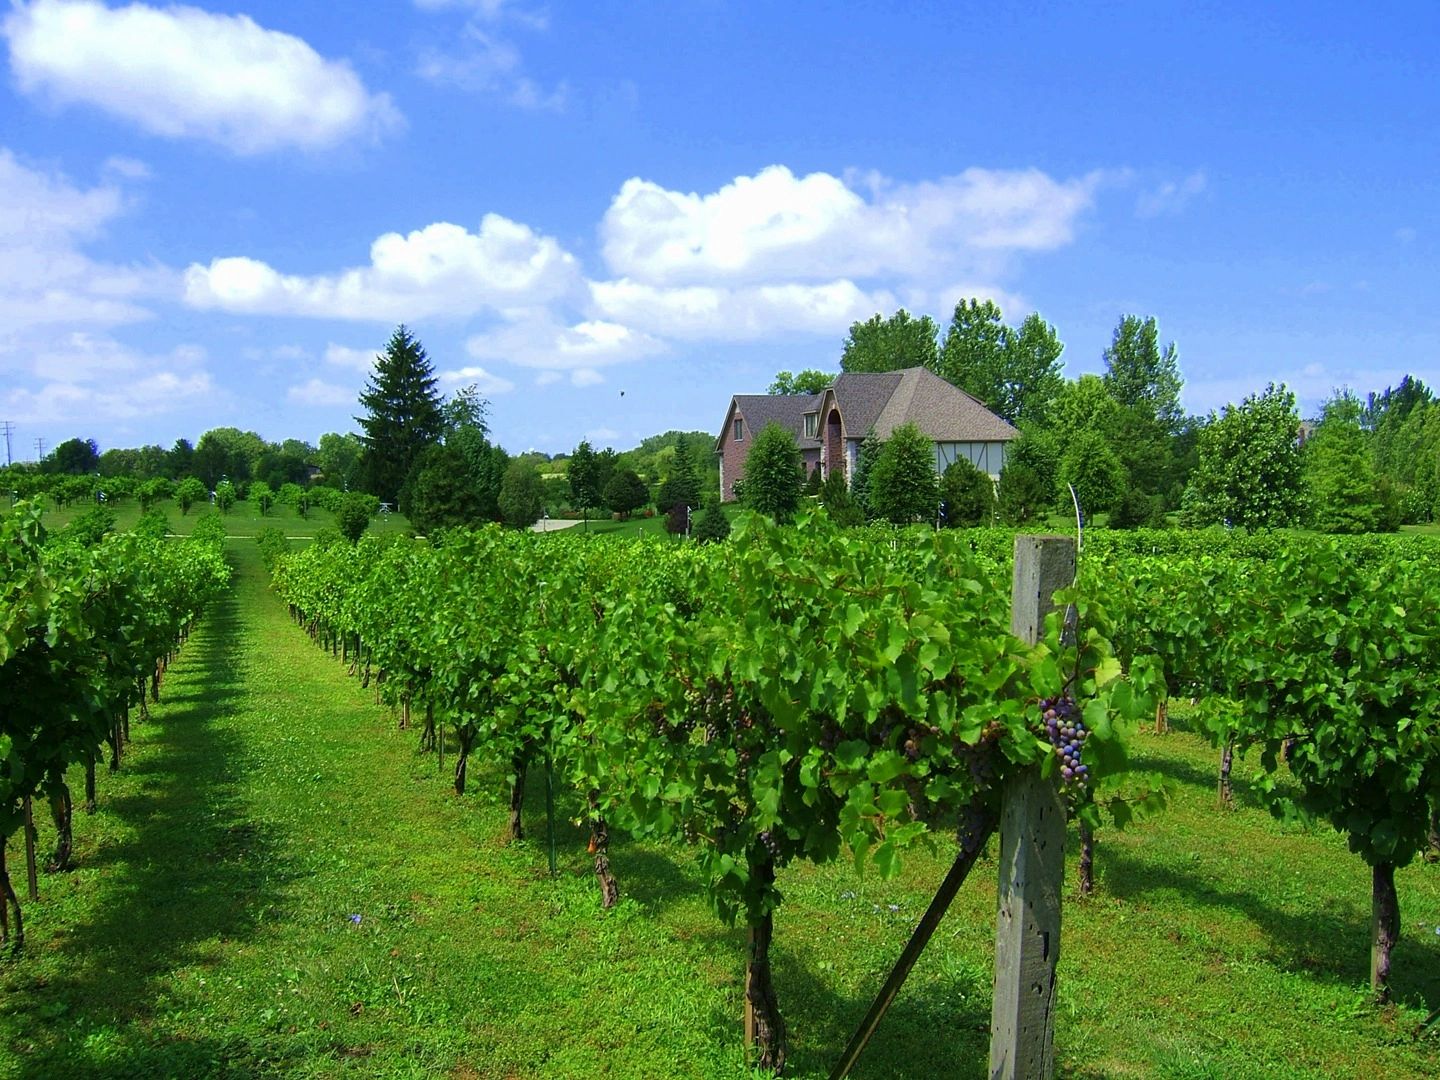 Vineyard and Winery - Valentino Vineyards Inc.